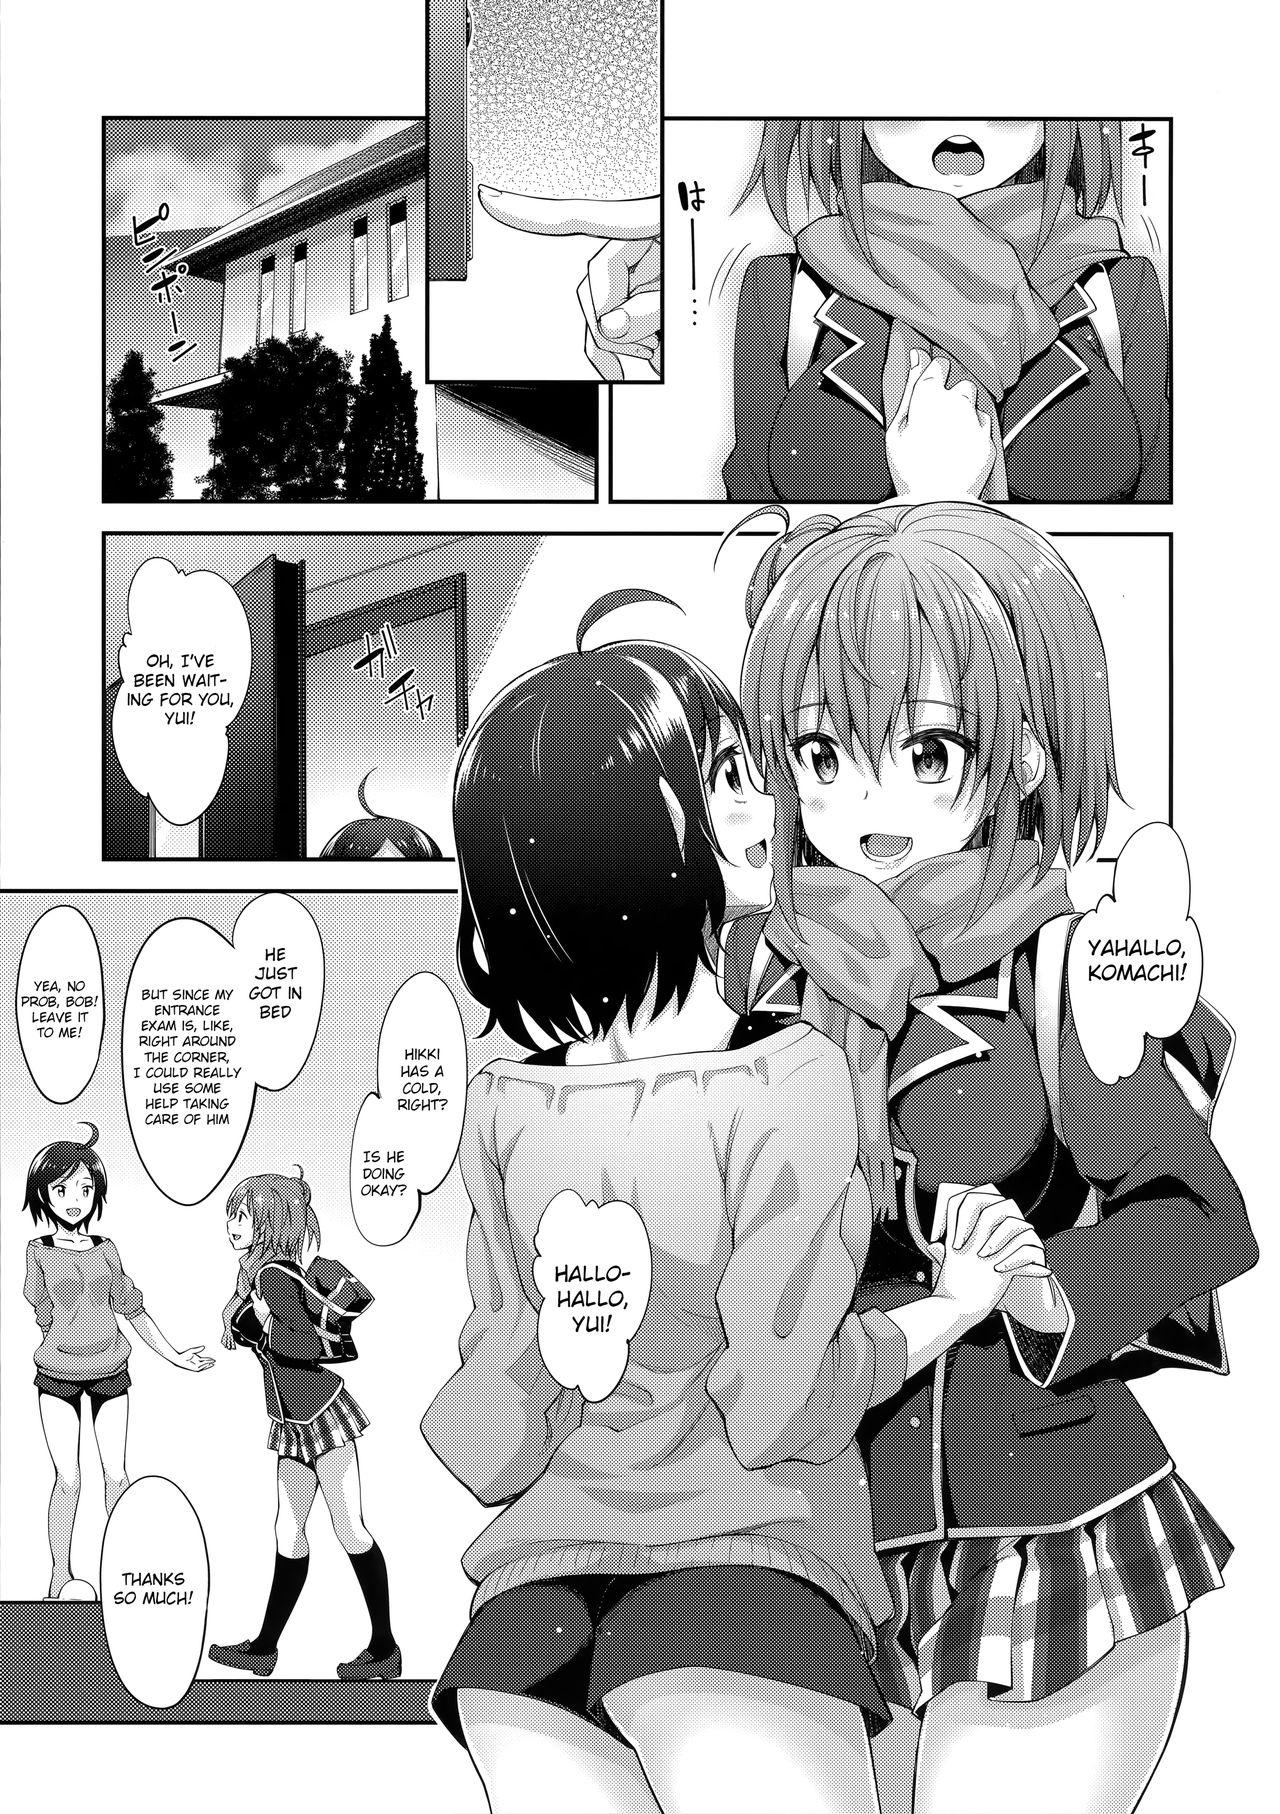 Domina LOVE STORY #02 - Yahari ore no seishun love come wa machigatteiru Huge Cock - Page 5